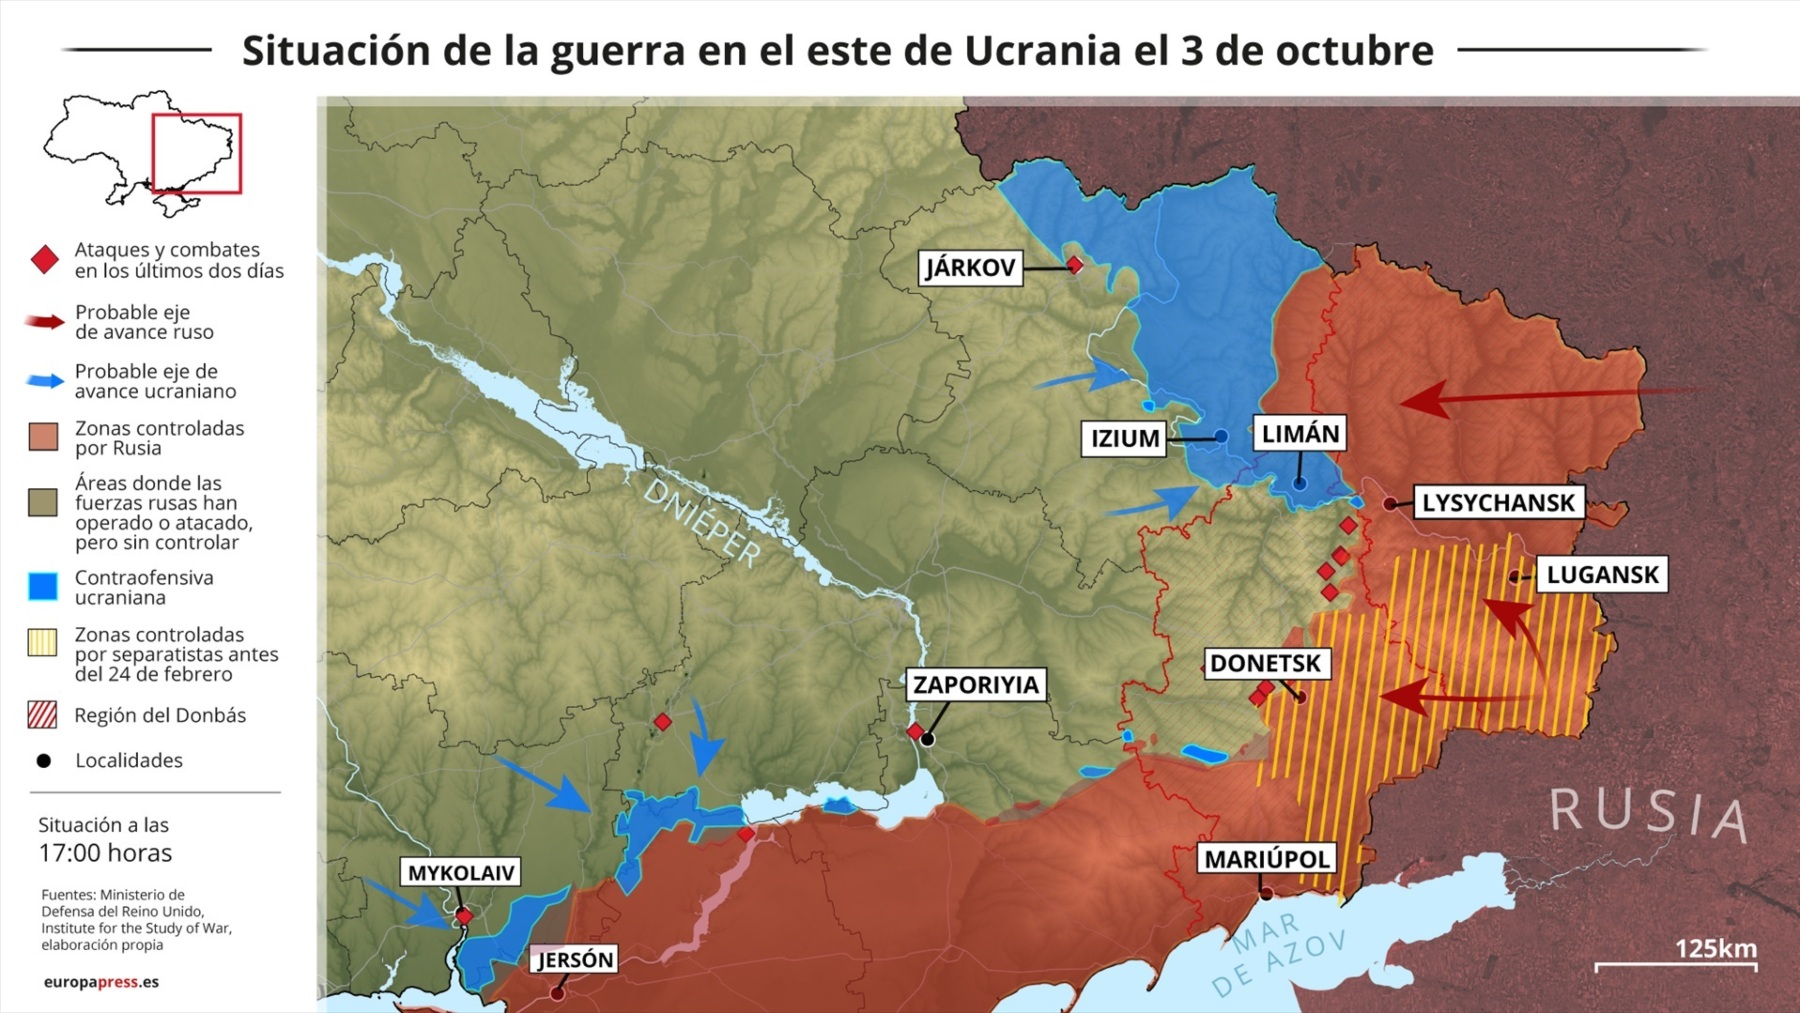 Mapa con la situación de la guerra en el este de Ucrania el 3 de octubre (EP).